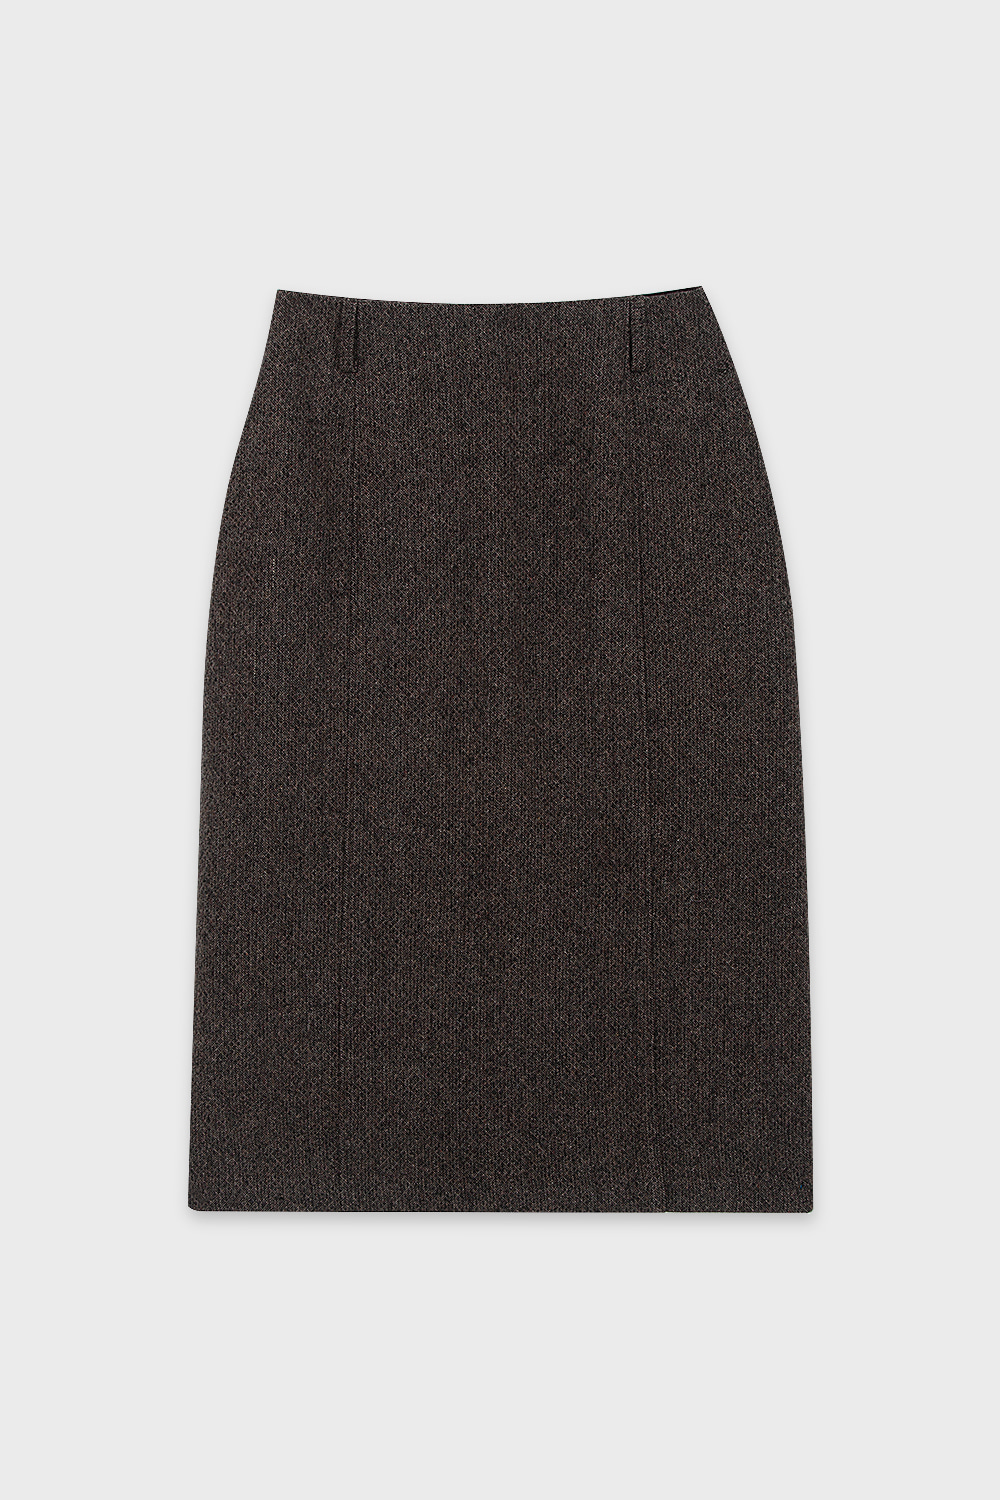 Wool Homespun Skirt Charcoal